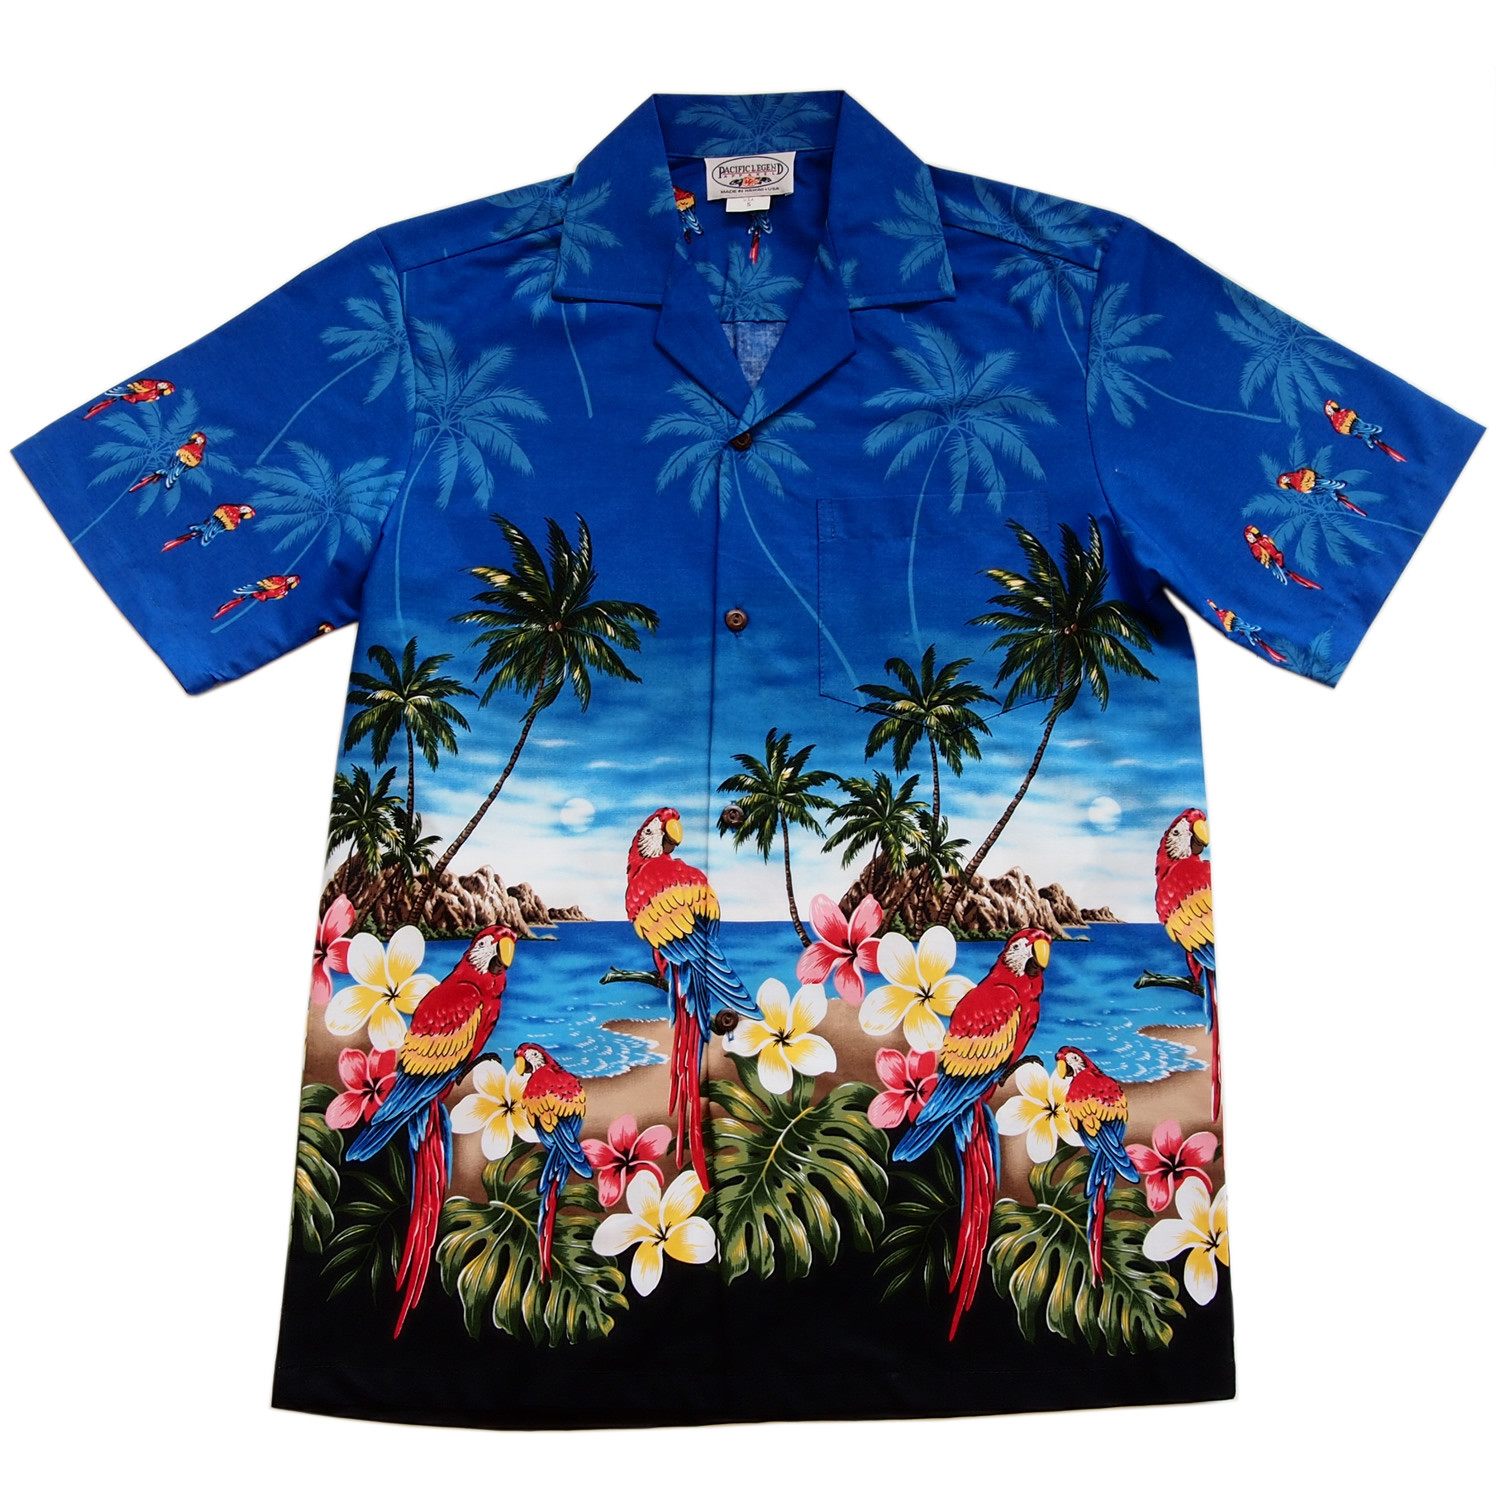 Parrot-Dise Blue Hawaiian Border Aloha Sport Shirt - PapayaSun